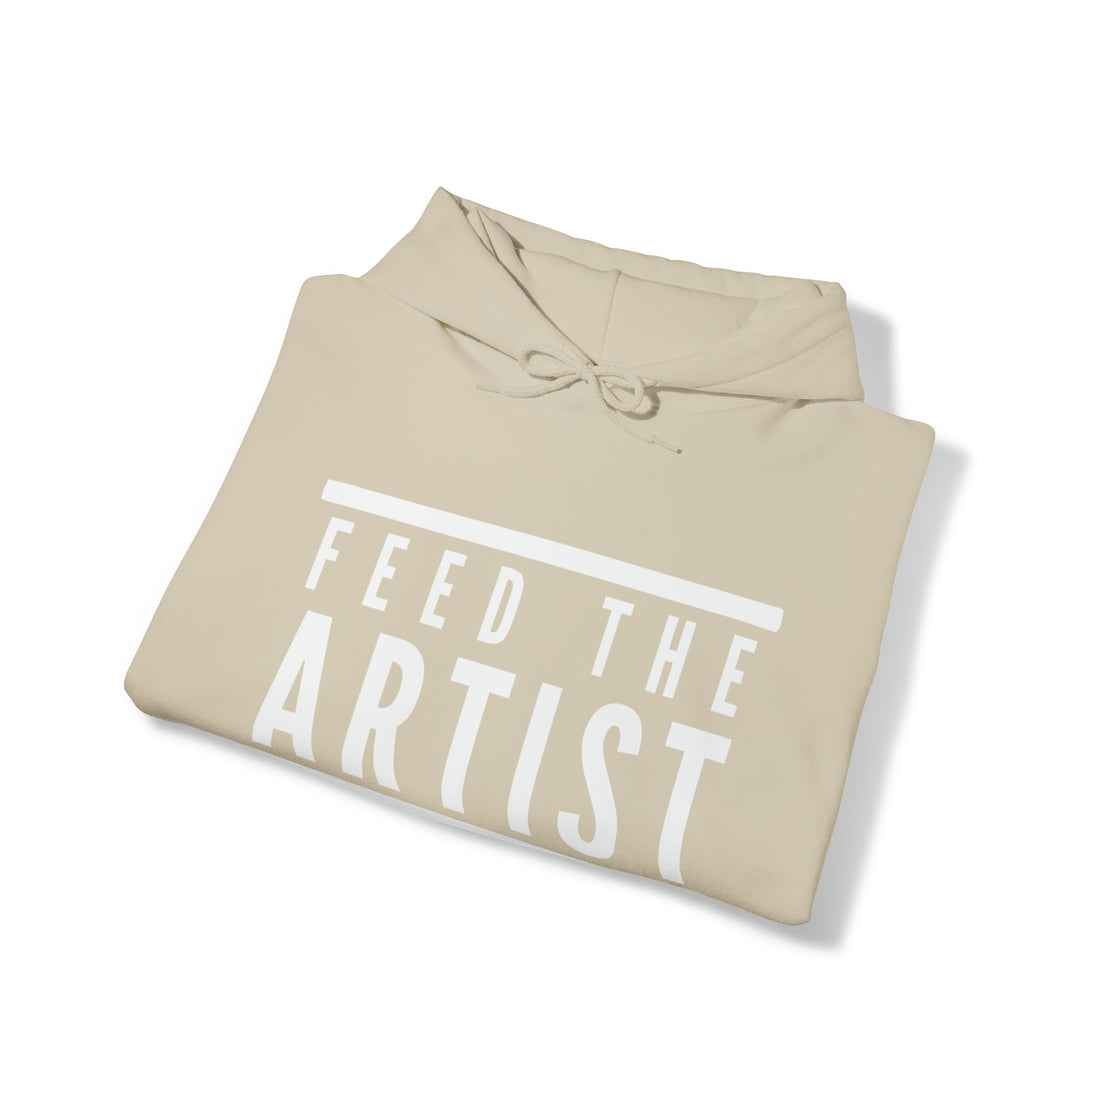 Feed the Artist Hoodie, Unisex Heavy Hooded Sweatshirt